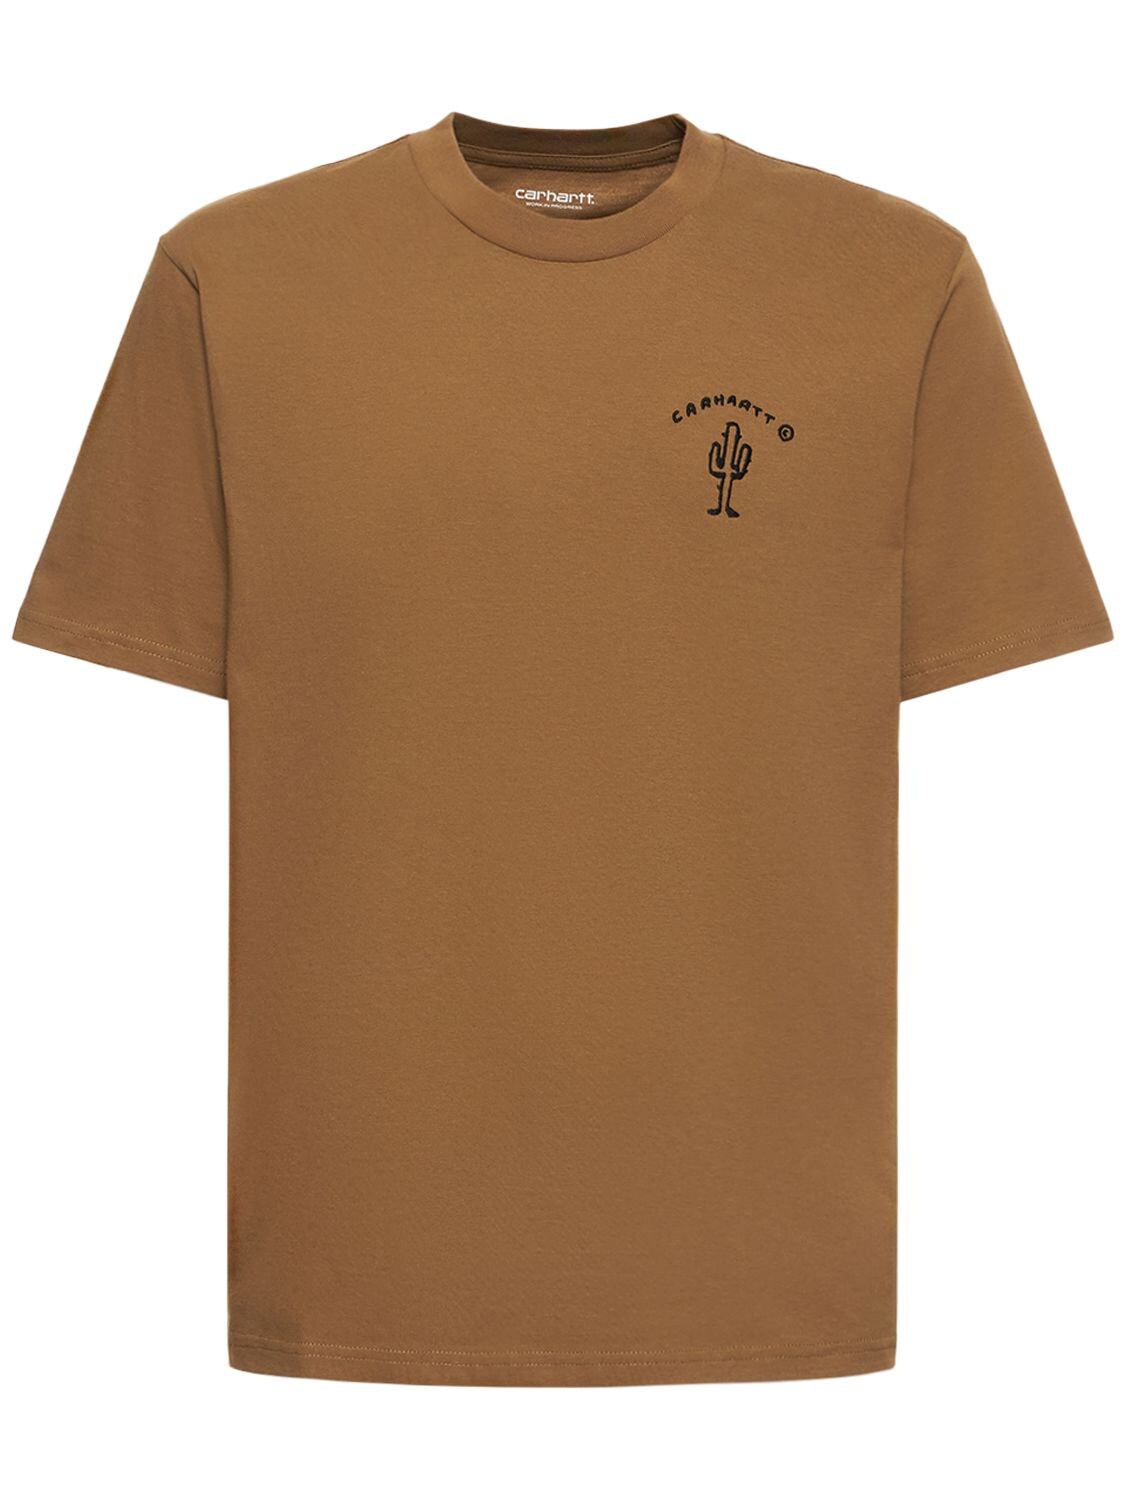 New Frontier Organic Cotton T-shirt - CARHARTT WIP - Modalova